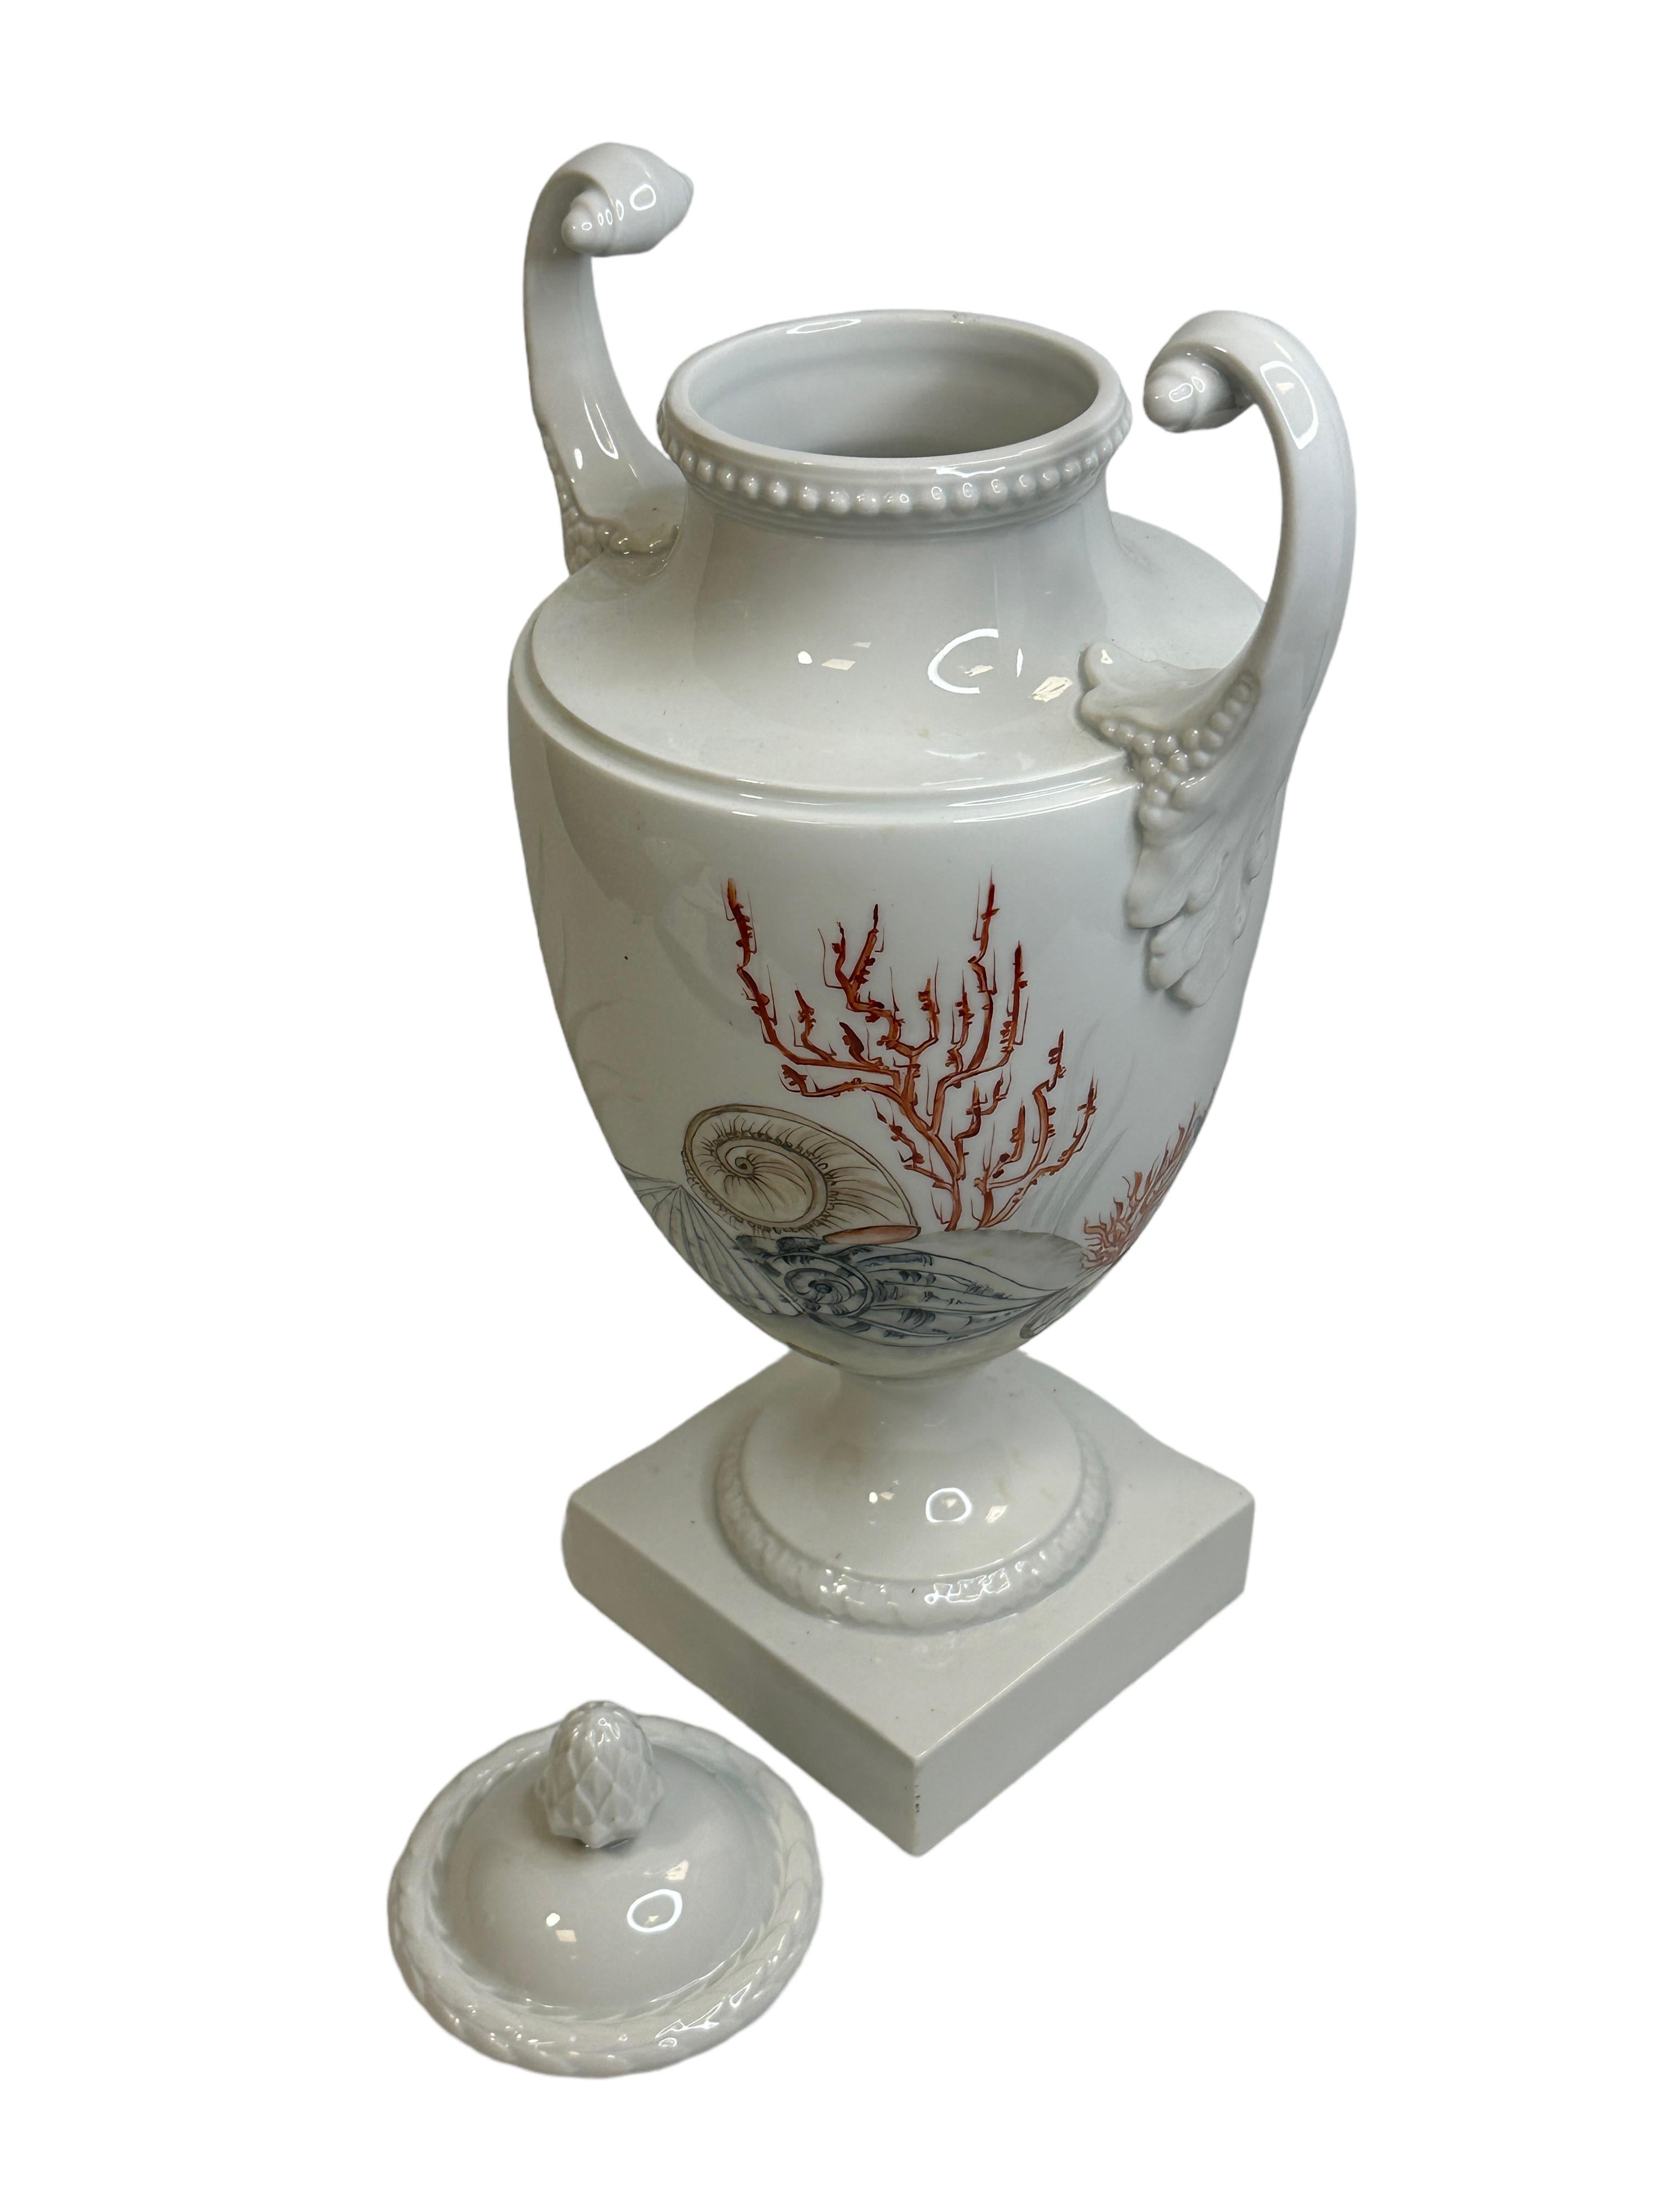 Amphora lidded Vase with Sea Creatures Motif by Lindner Porcelain vintage 1960s For Sale 6